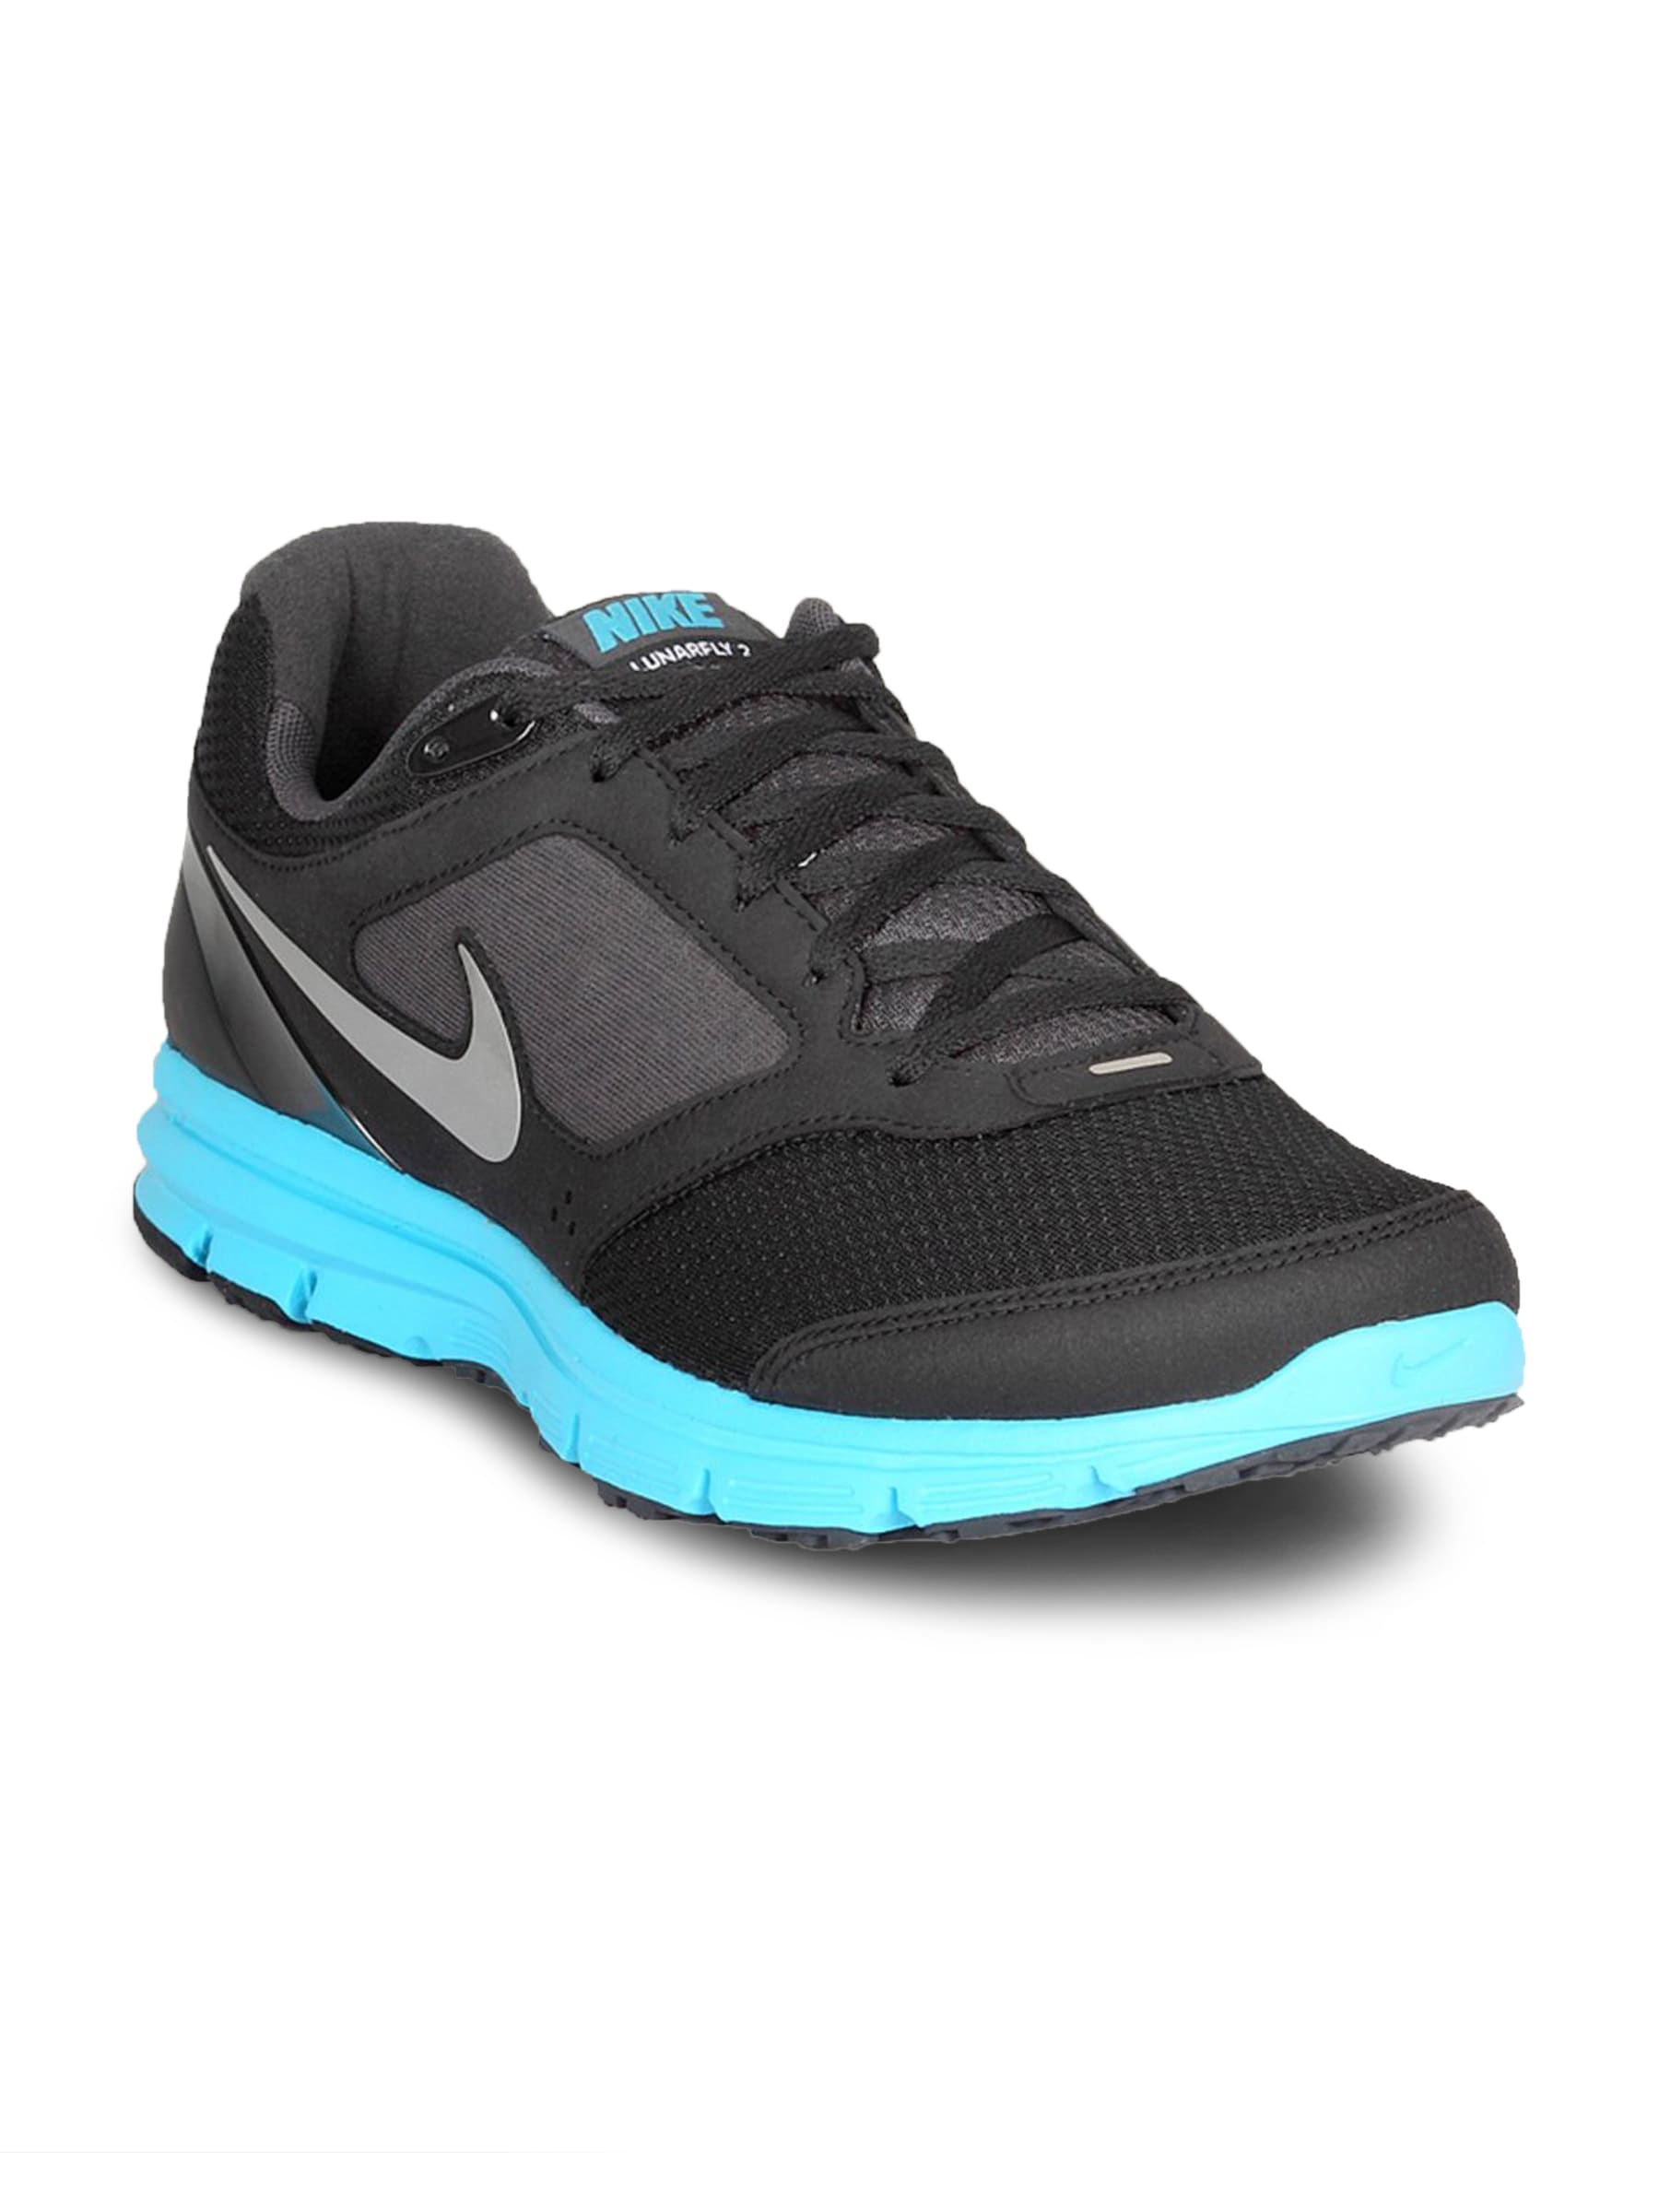 Nike Men's Lunar Fly Black Blue Shoe